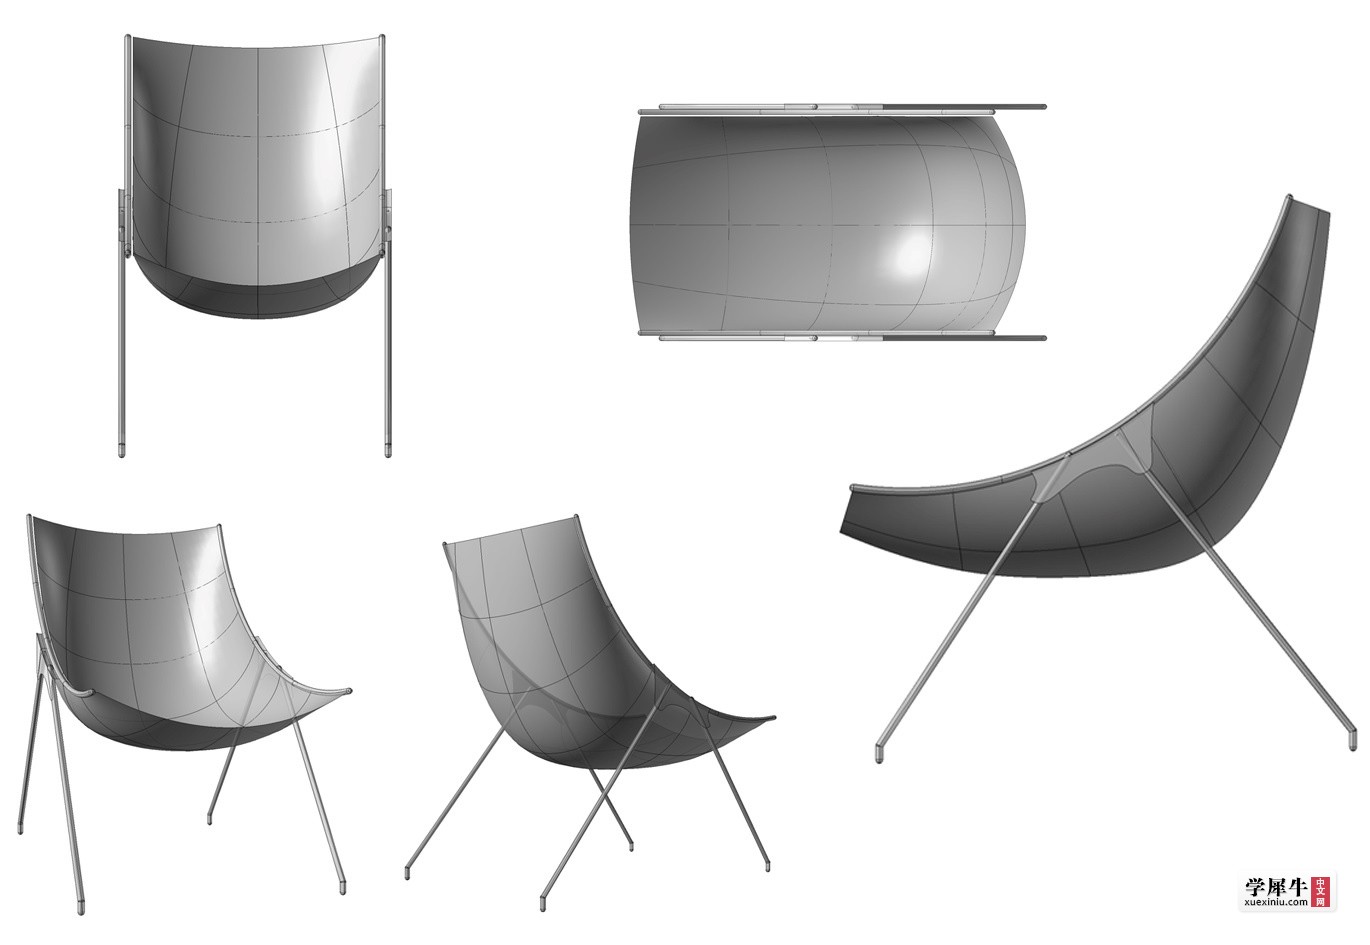 图 2-2 • 看图片学建模2—小椅三视图